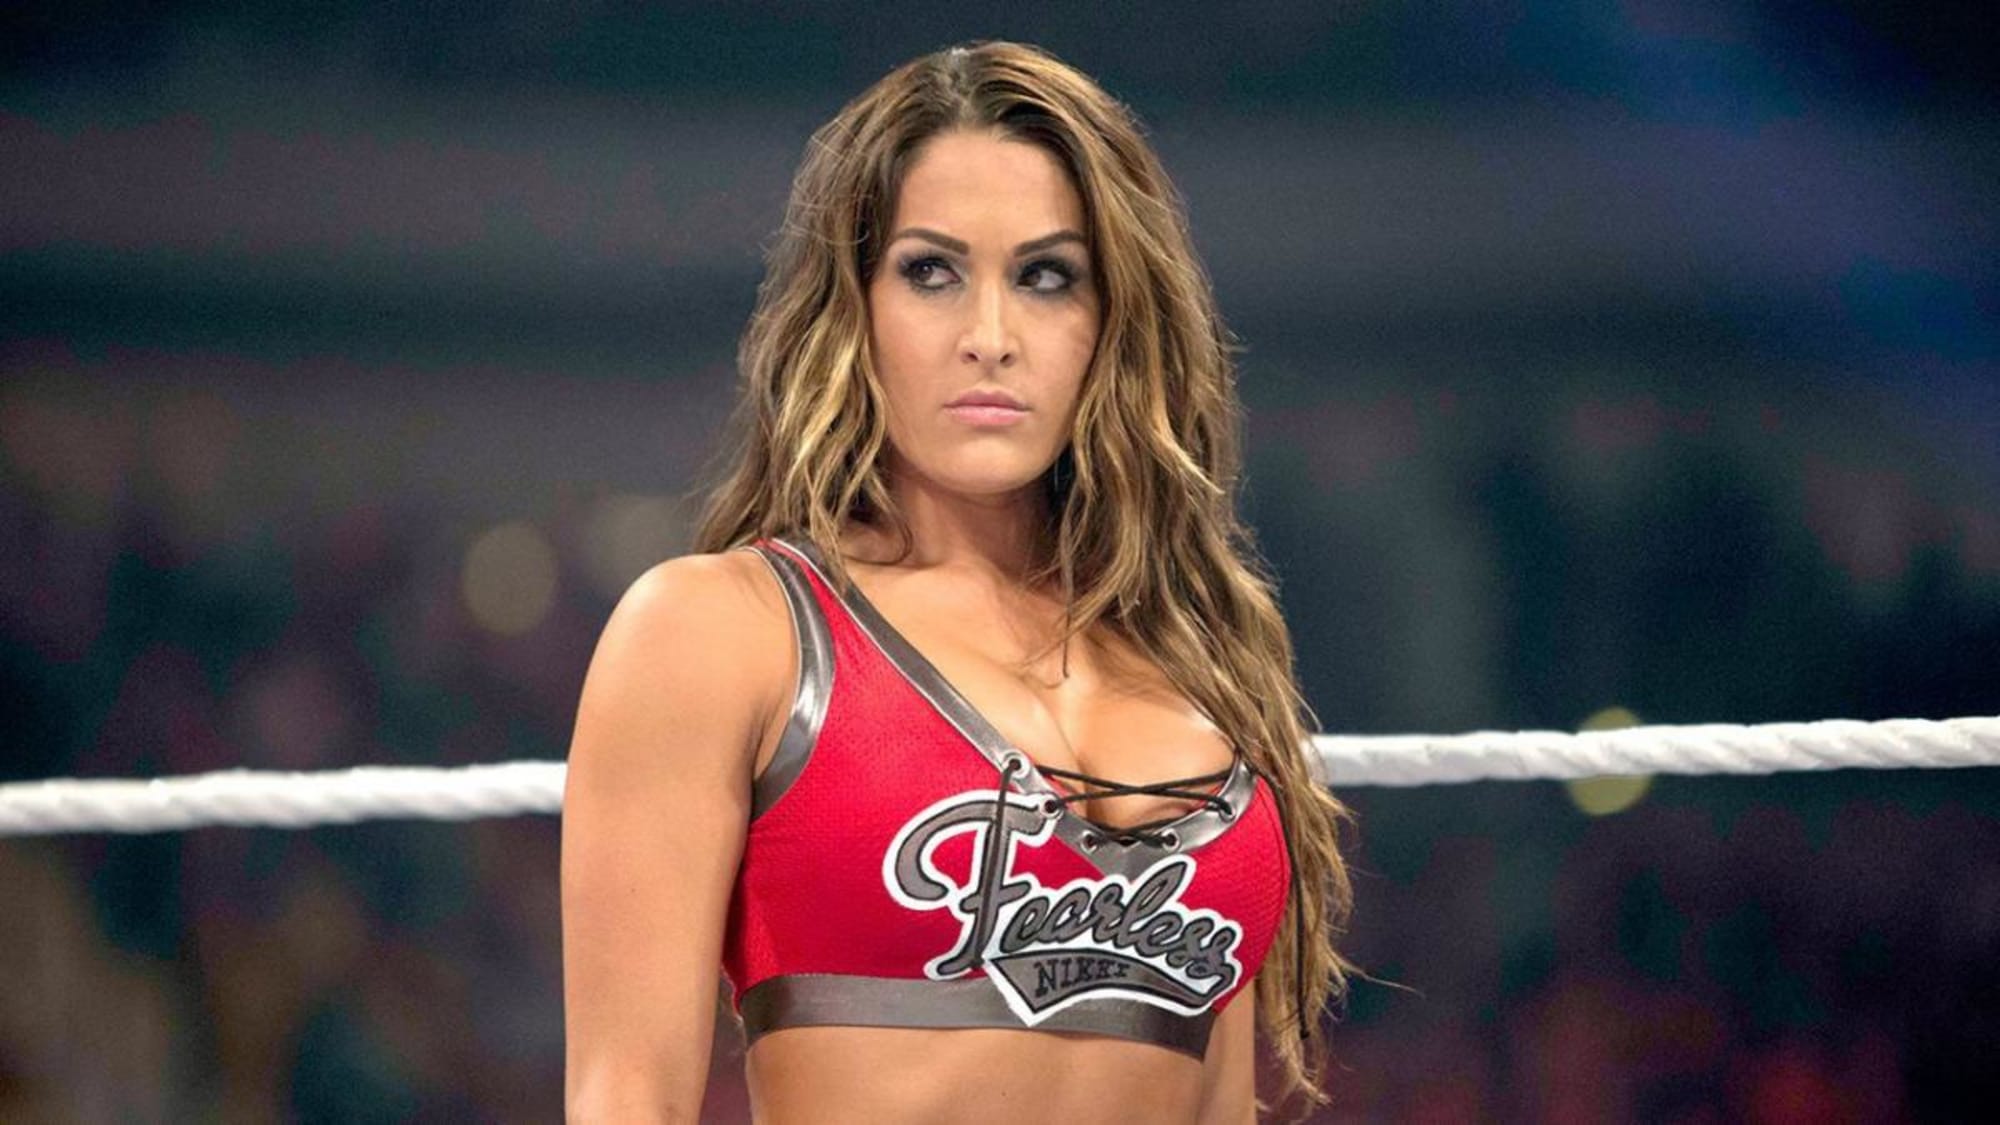 Nikki Bella Xnx - WWE: Nikki Bella's in-ring work was under-appreciated